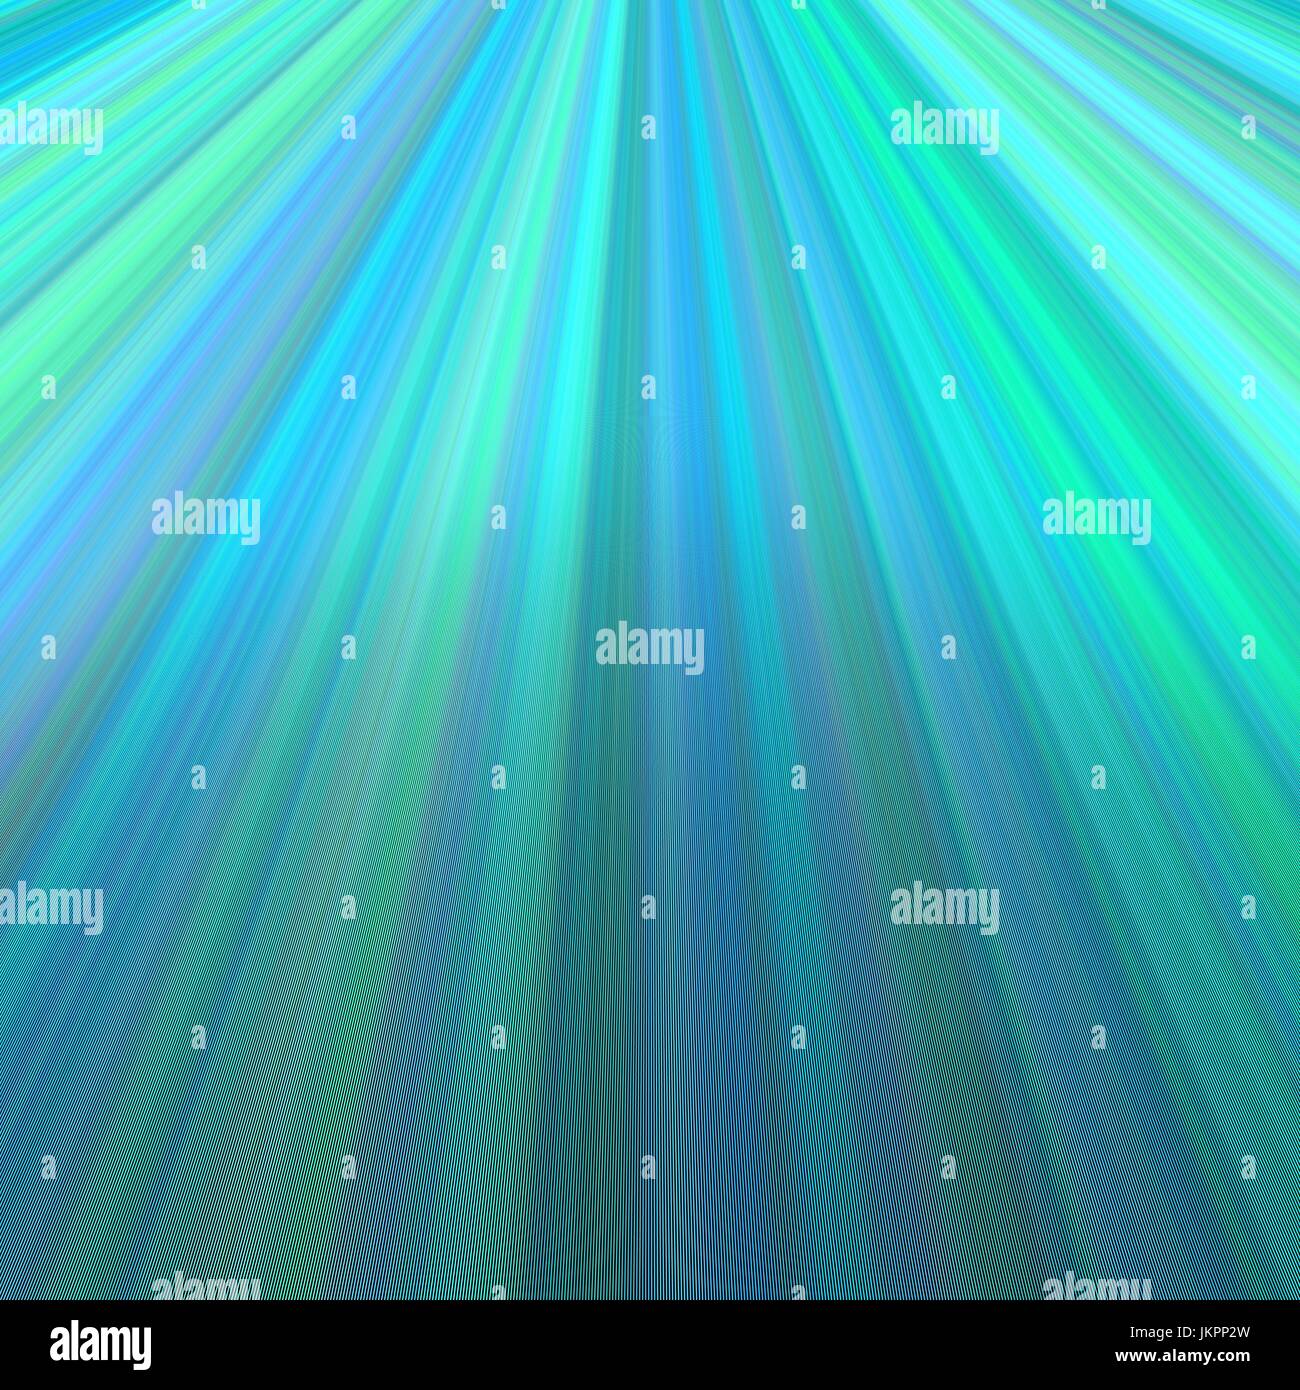 Ray hellen Hintergrund - Vektorgrafik aus Linien in blaugrünen Tönen Stock Vektor